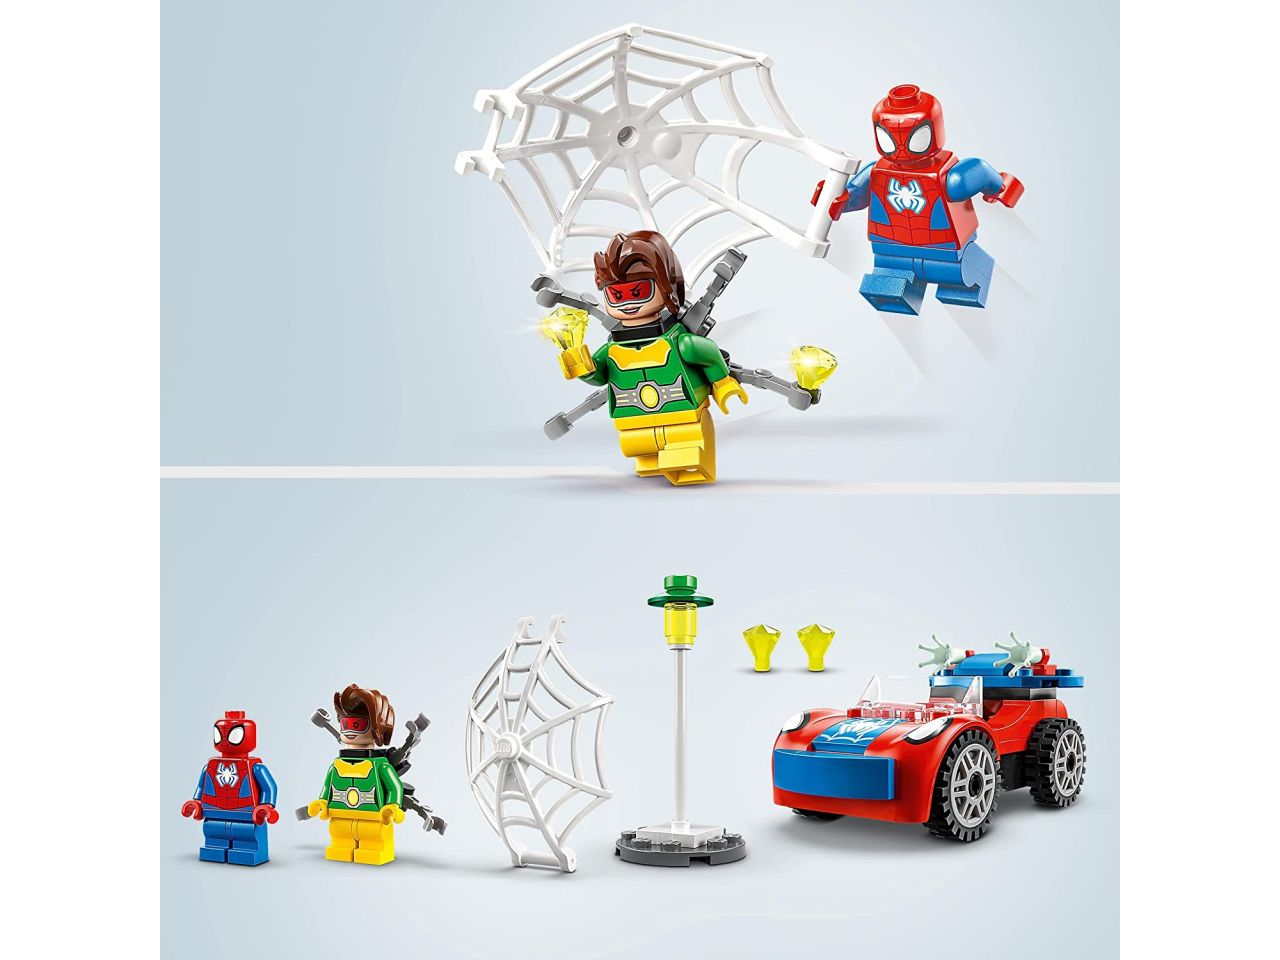 Lego spidey spider-man